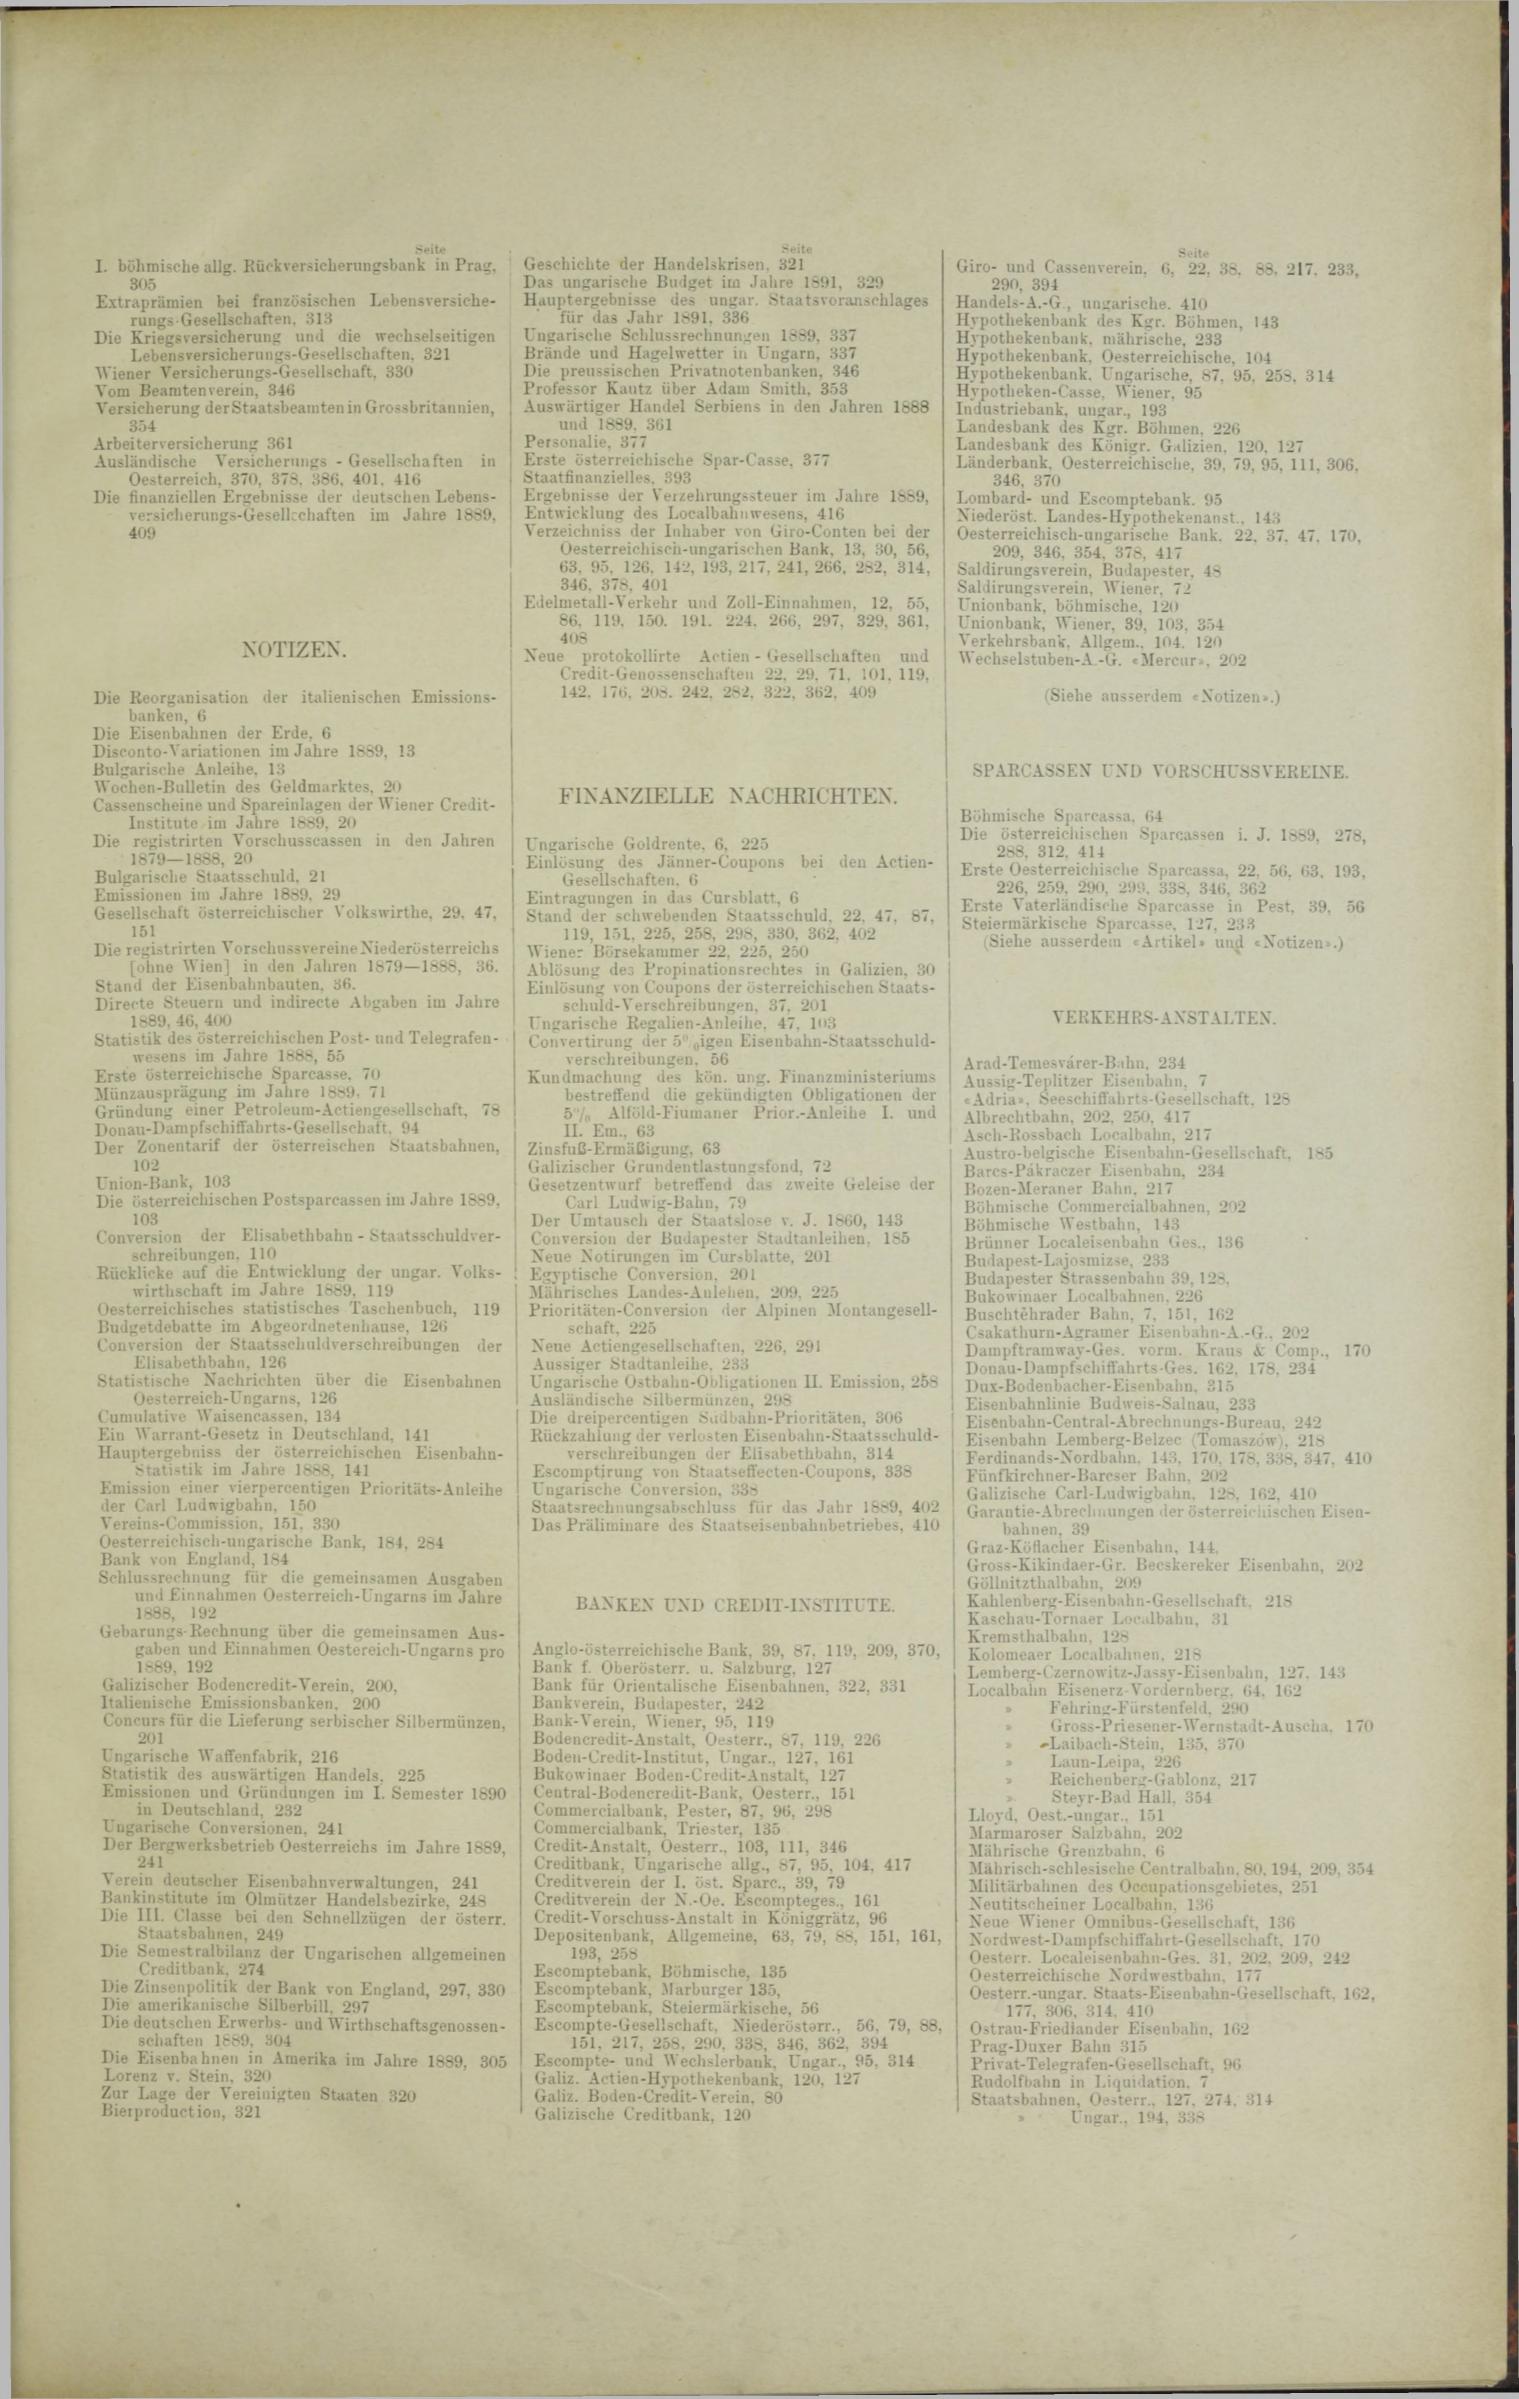 Der Tresor 05.06.1890 - Seite 11